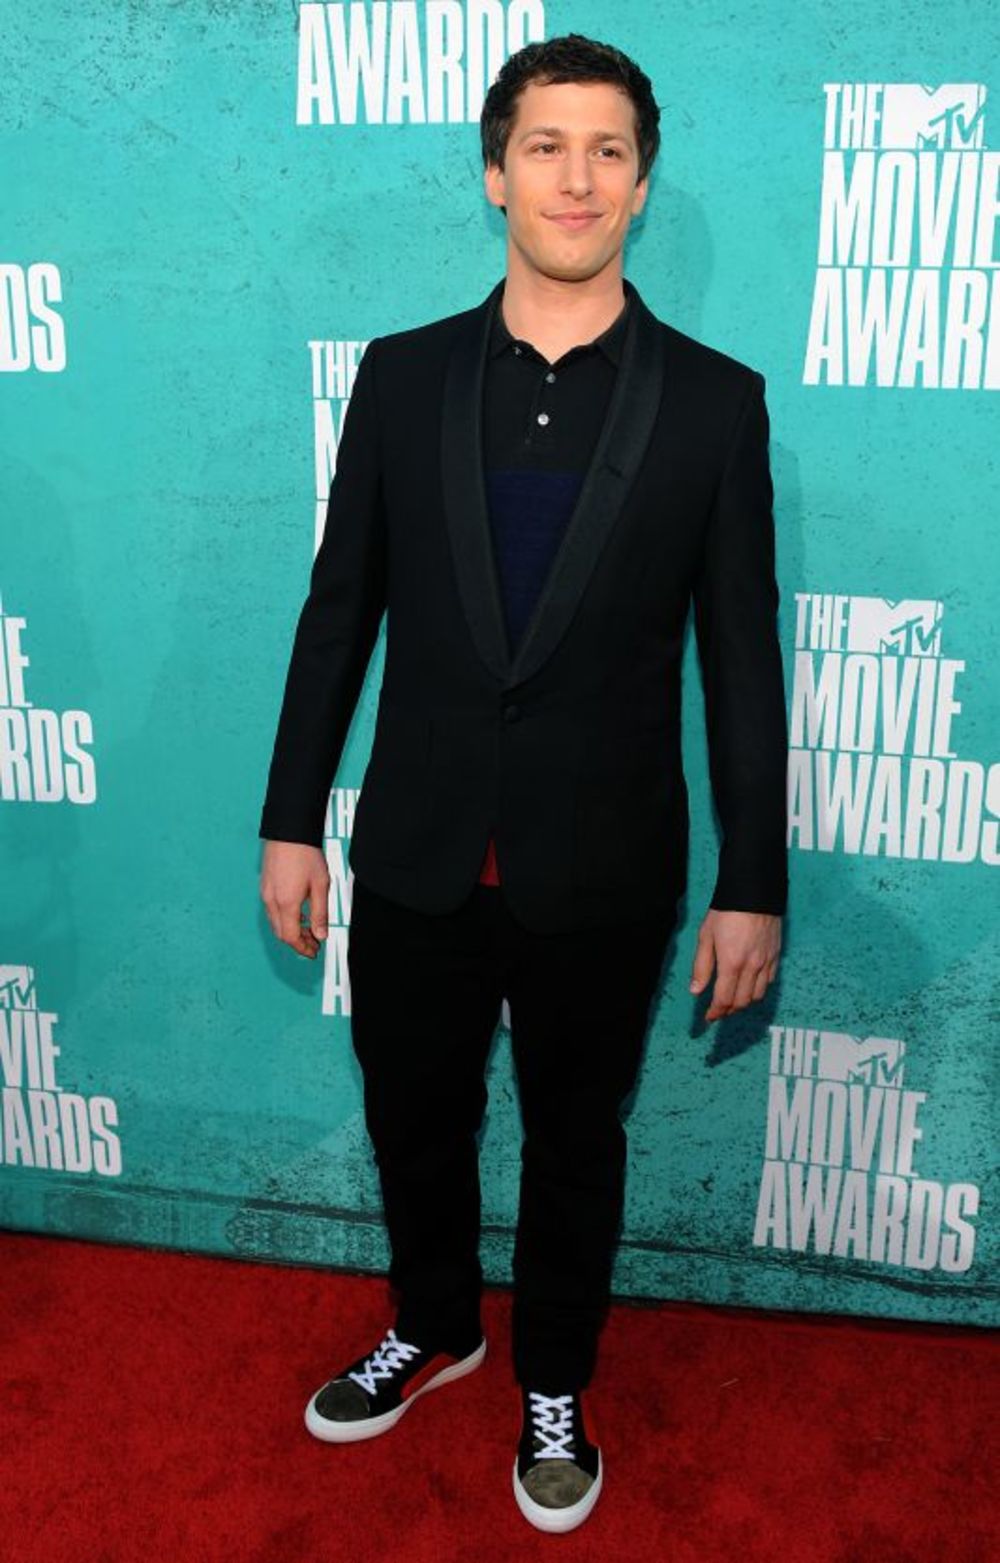 Poznata kao neobuzdana, jedinstvena i urnebesno zabavna, dodela 2012 MTV Movie Awards nagrada održana je noćas u Gibson Amphitheatru u Universal Cityju, Kalifornija. Bila je to još jedna MTV-jeva noć za pamćenje. Rasel Brend je bio domaćin bez greške, a vrhunu